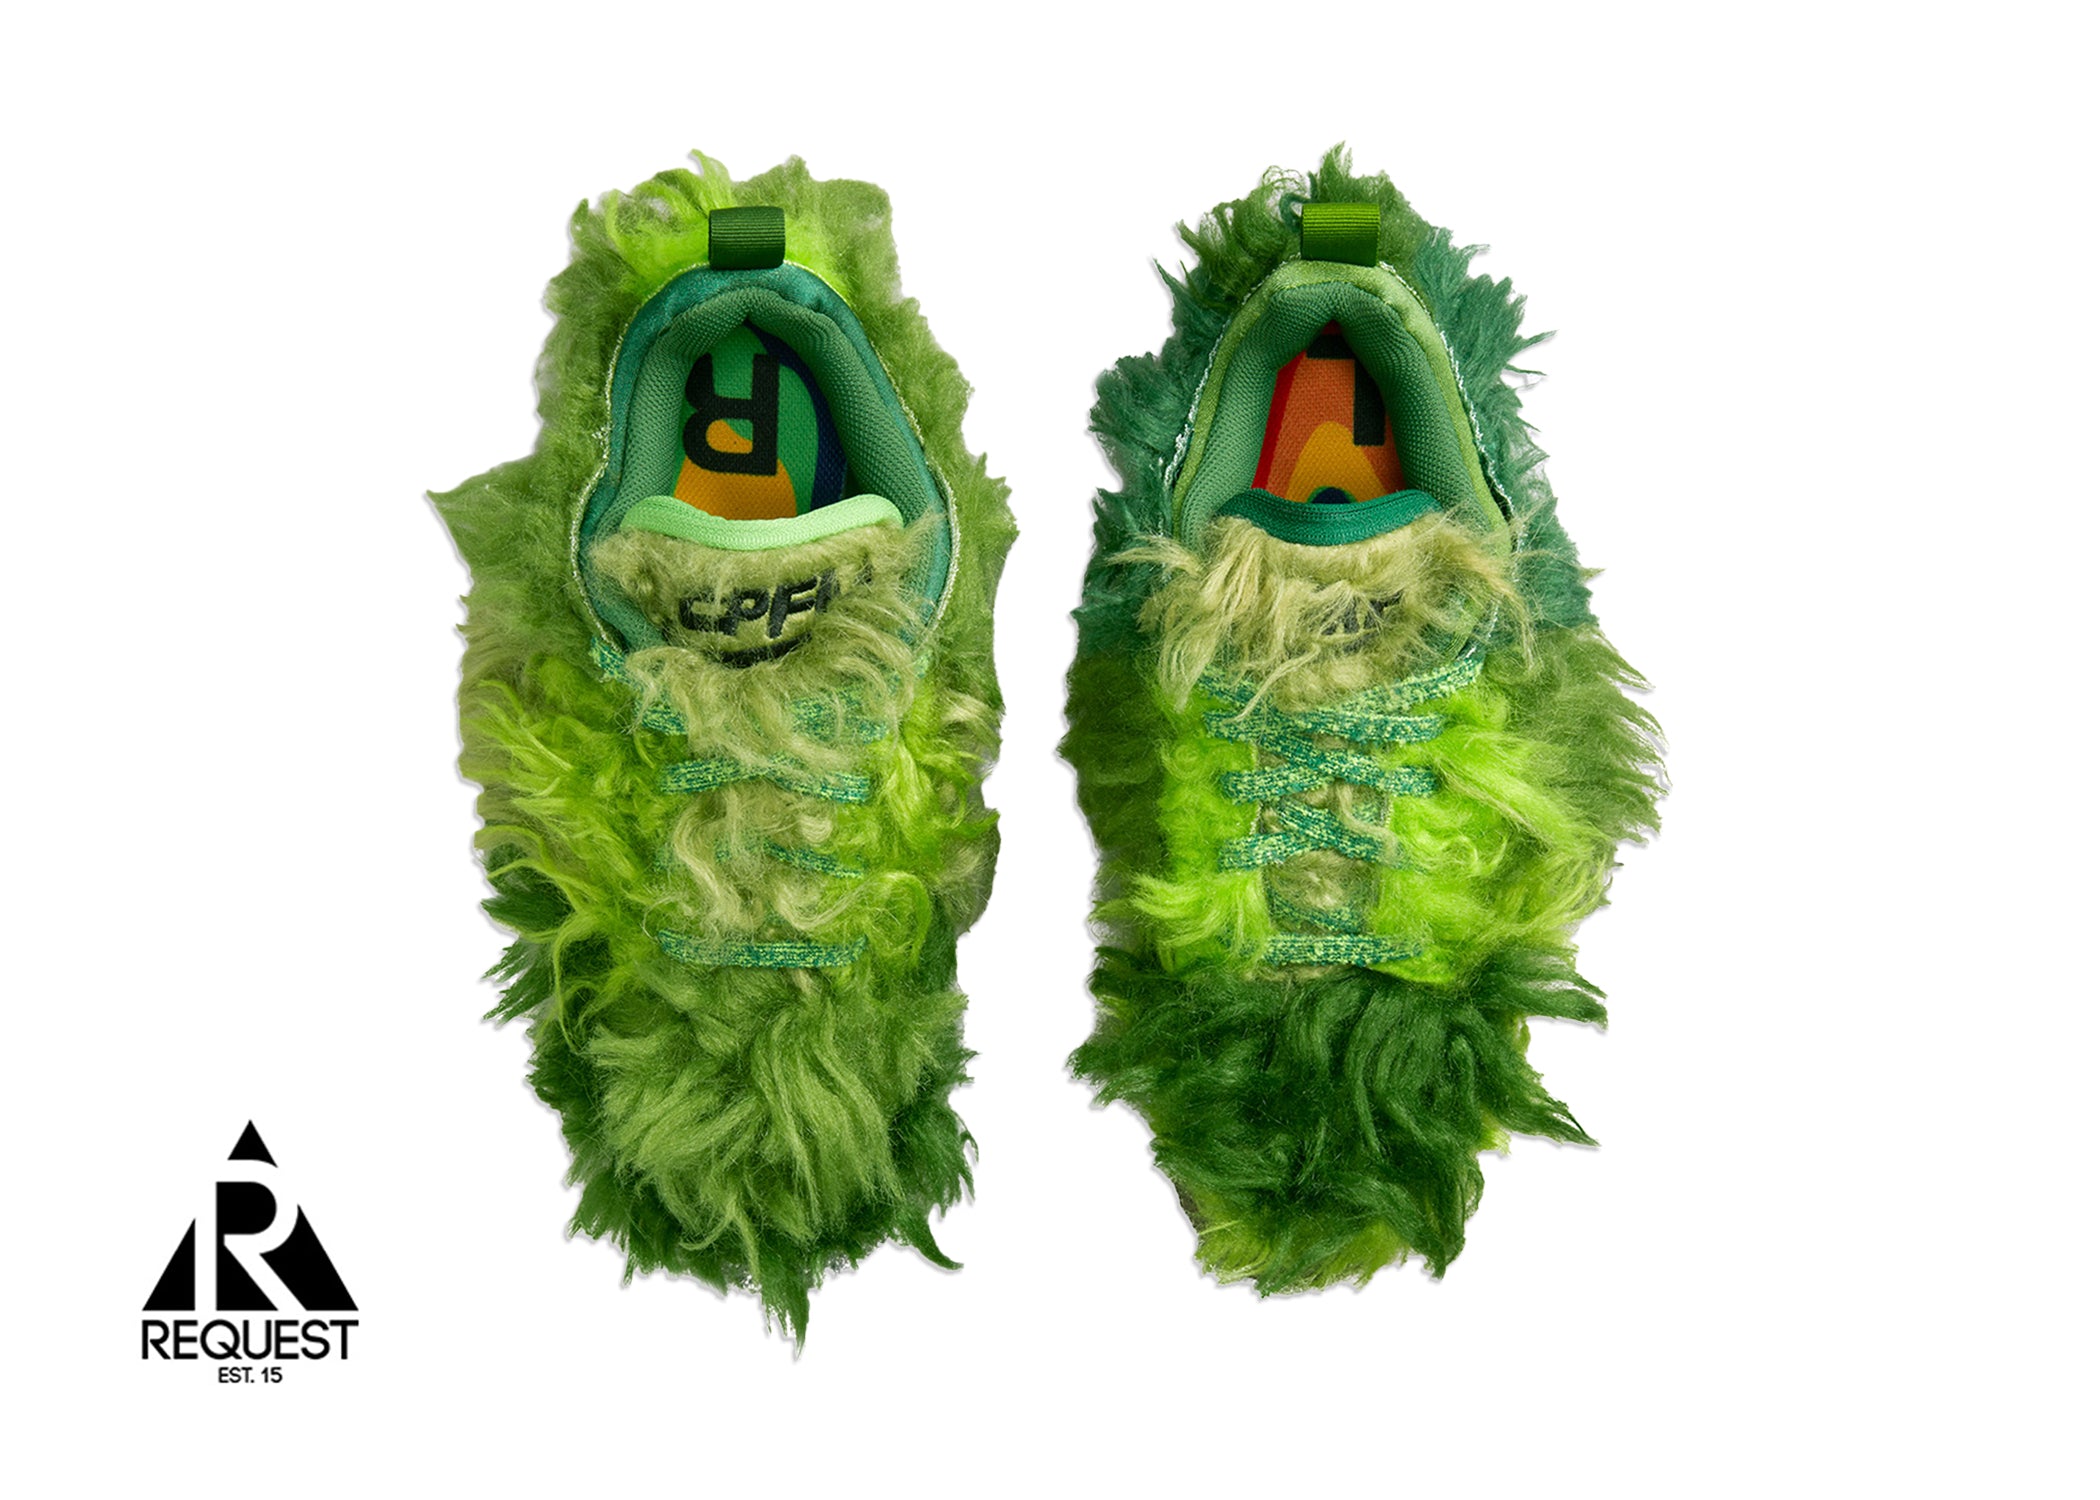 Nike CPFM Flea 1 "Cactus Plant Flea Market Grinch"